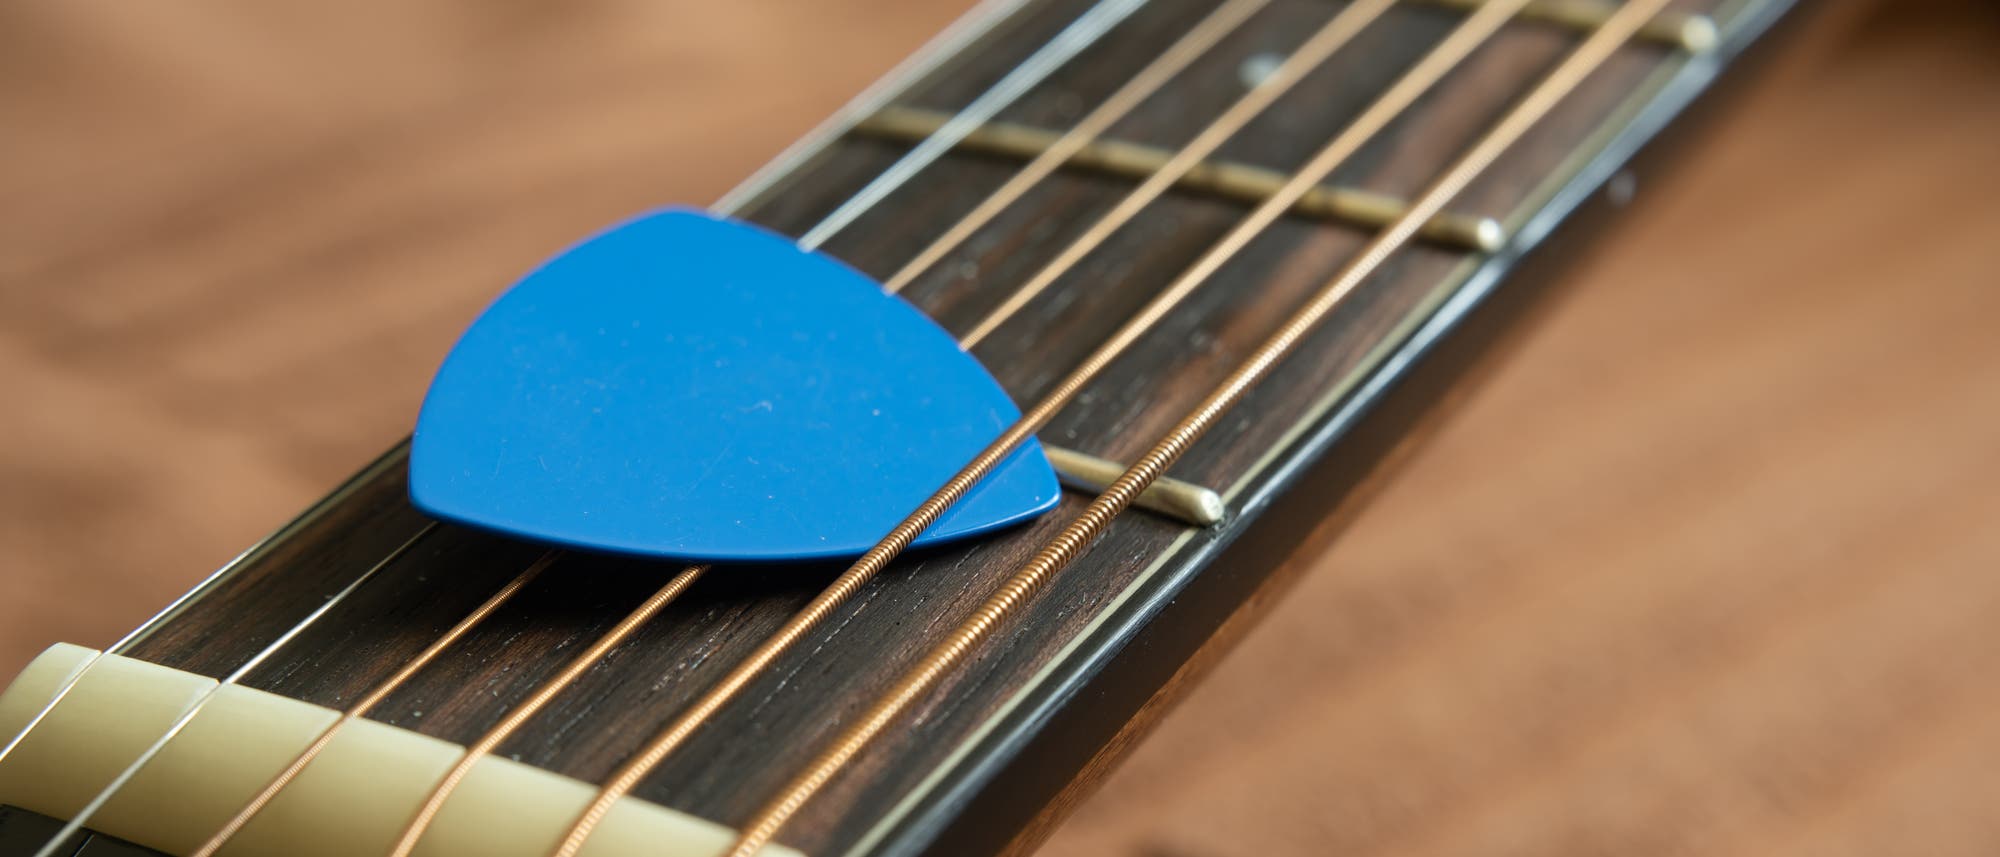 Gitarrenhals mit blauem Plektrum auf den Saiten.